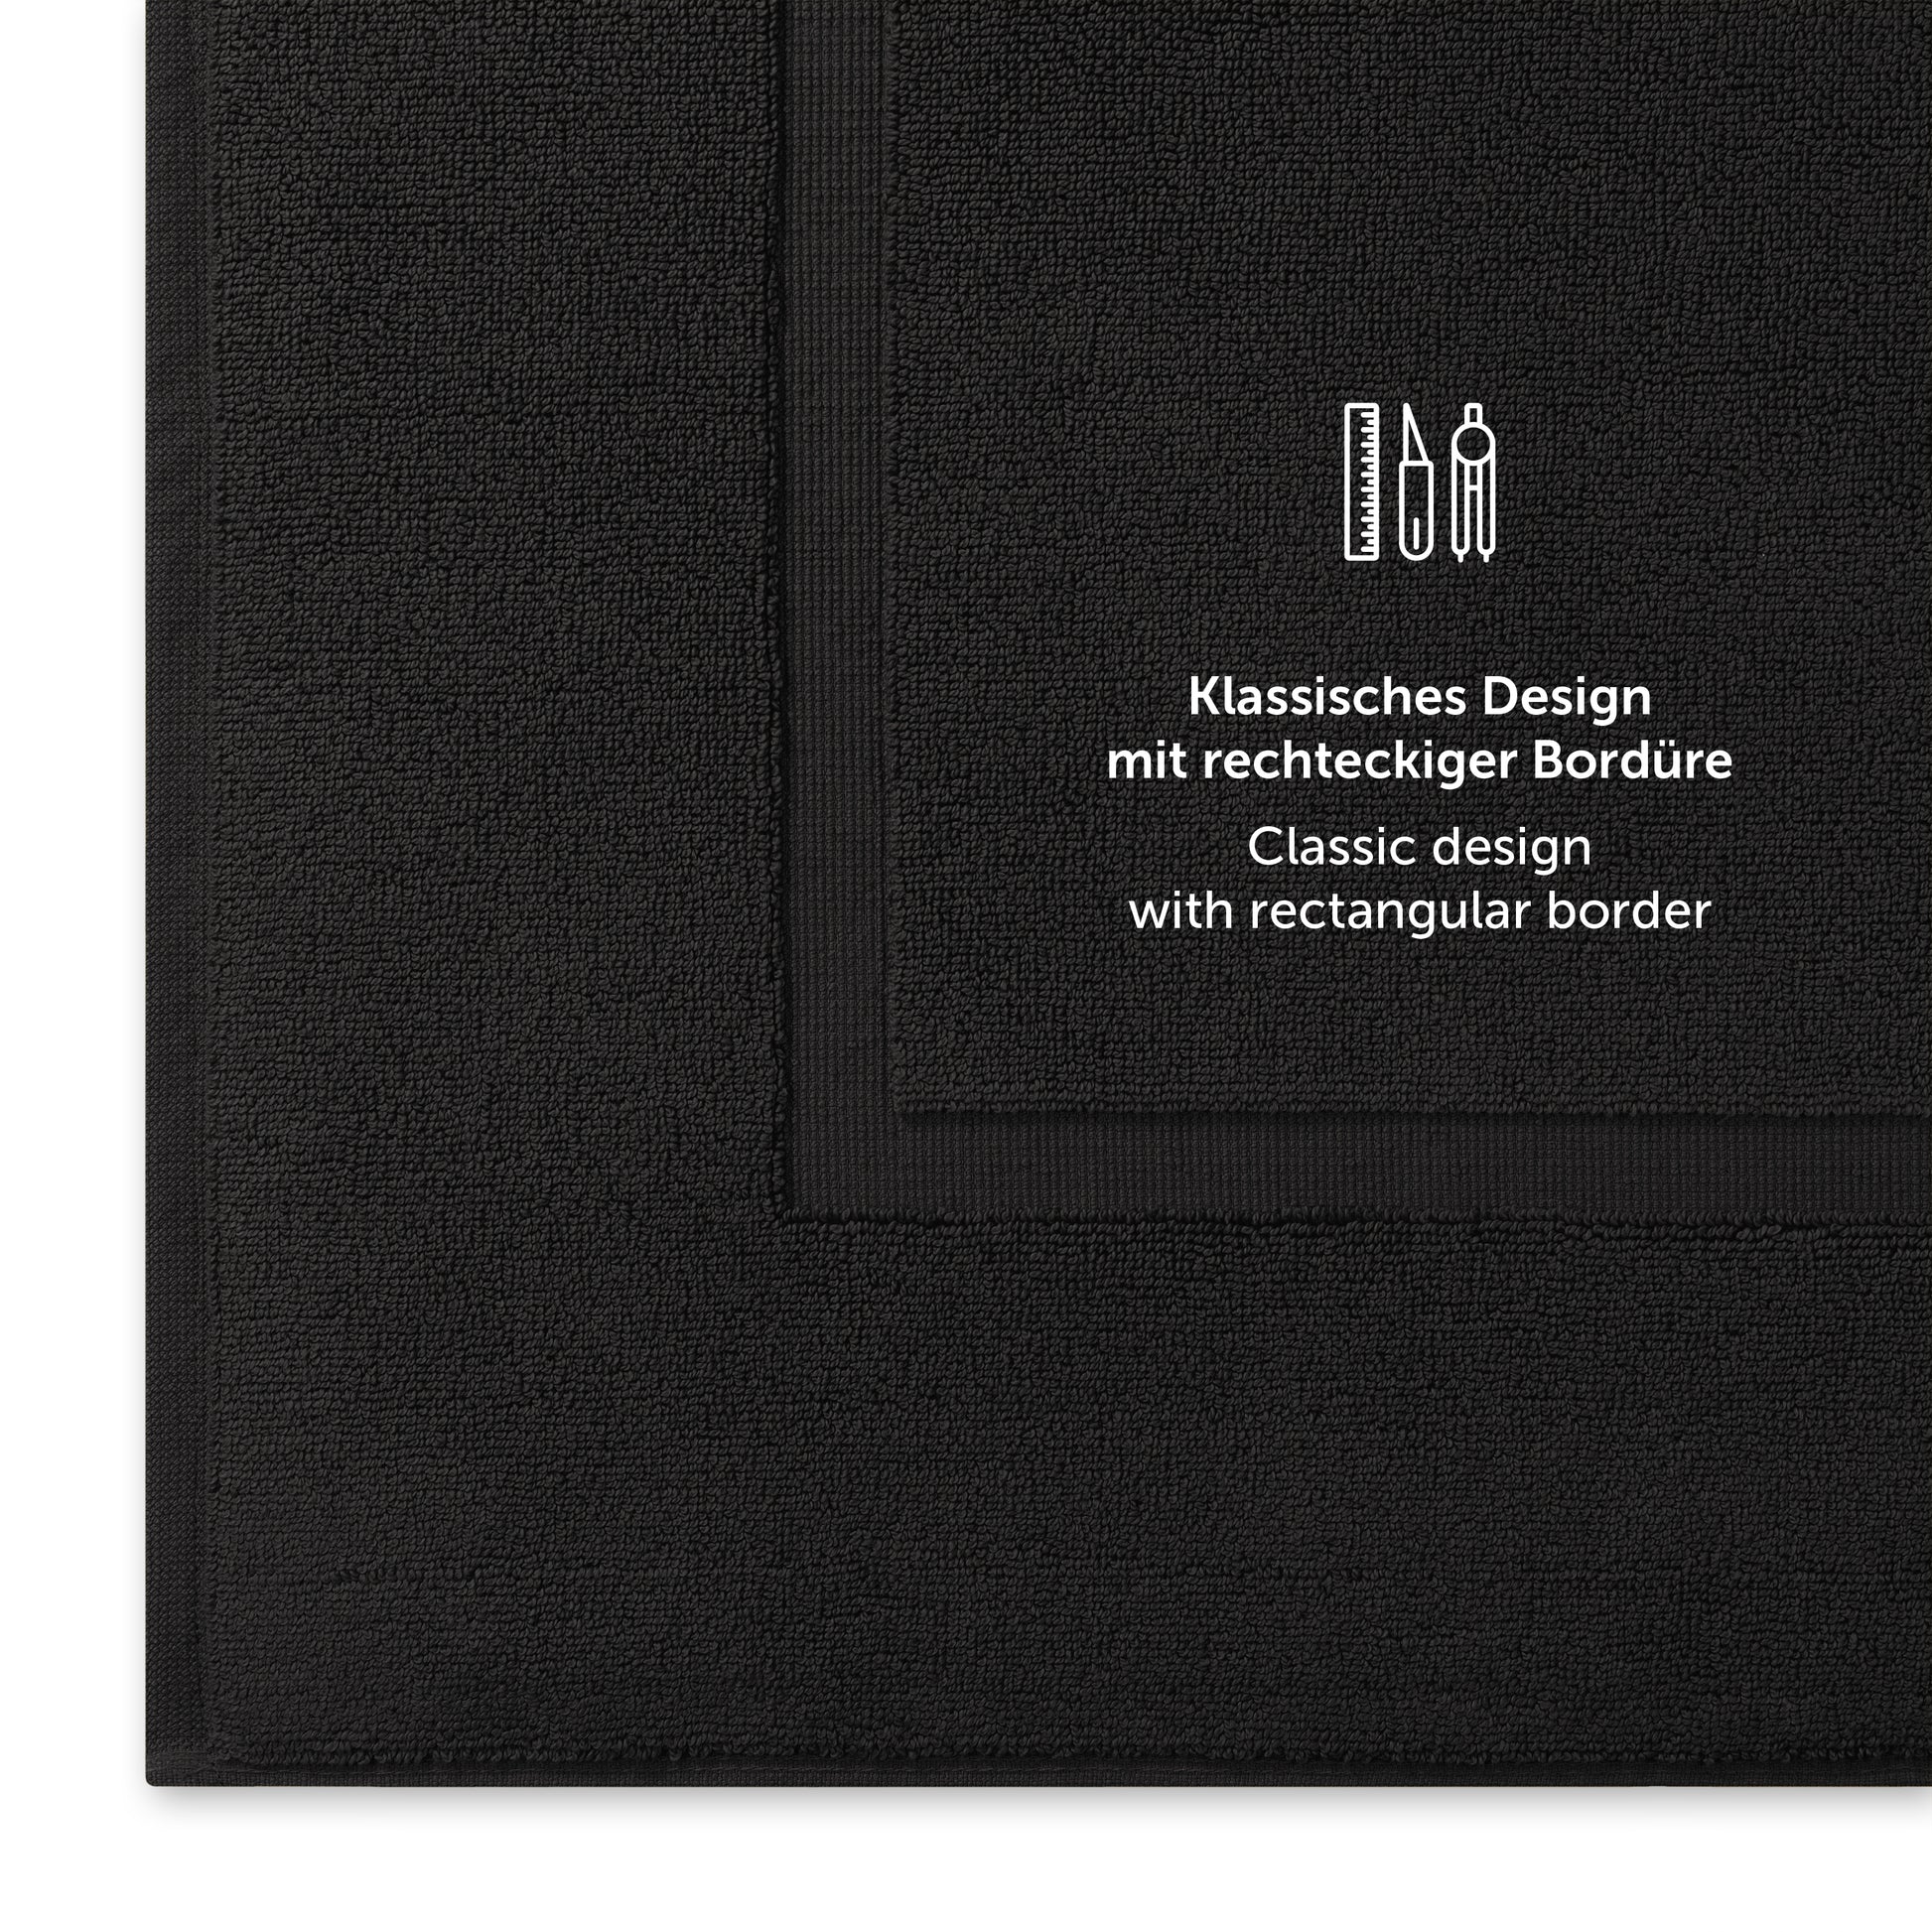 Schwarzes Handtuch mit klassischem Design und Bordürendetail.